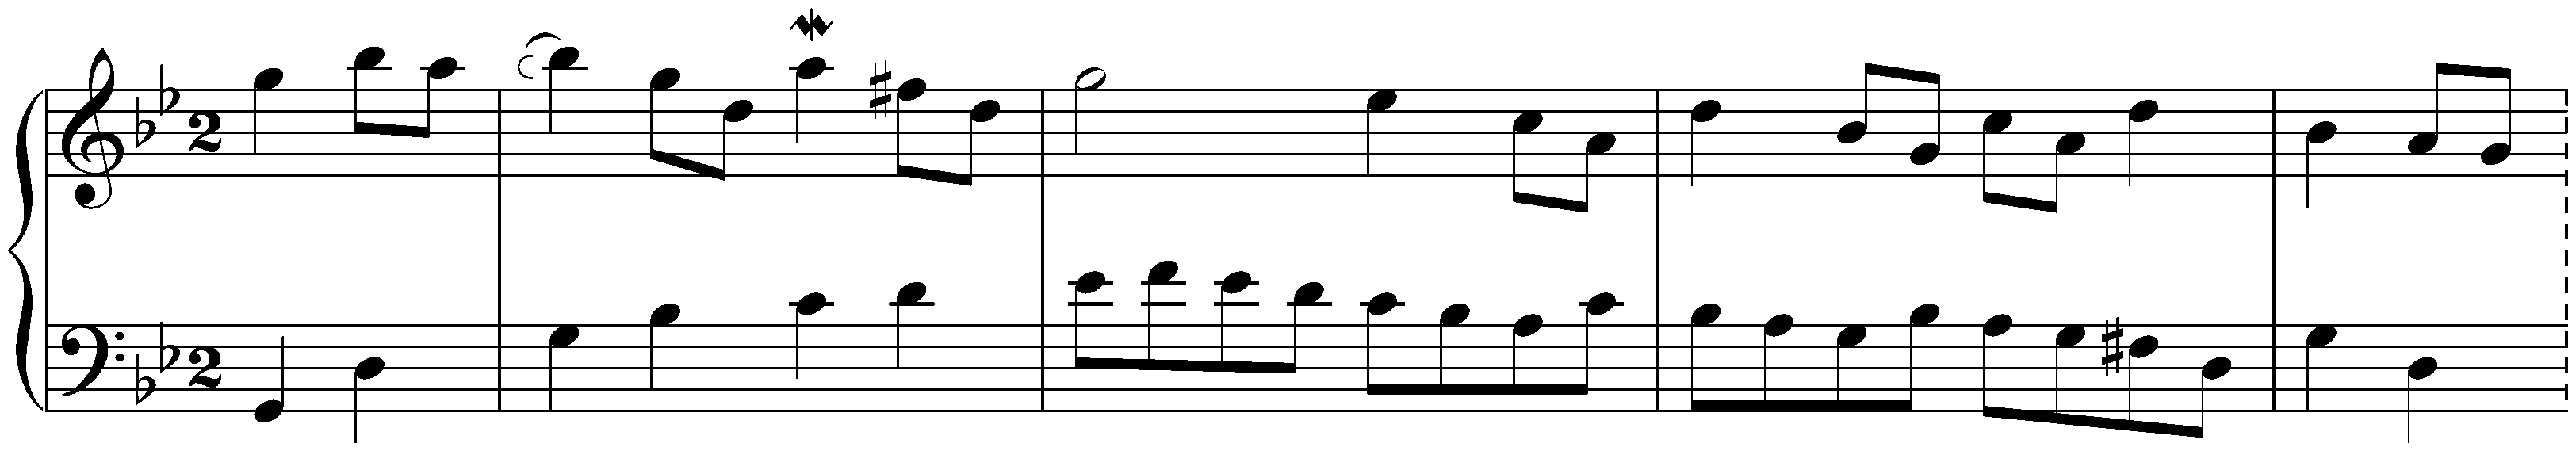 English Suite no. 3 in G minor, BWV 808; 5. Gavotte alternativement – Gavotte II ou la Musette – Gavotte alternativement